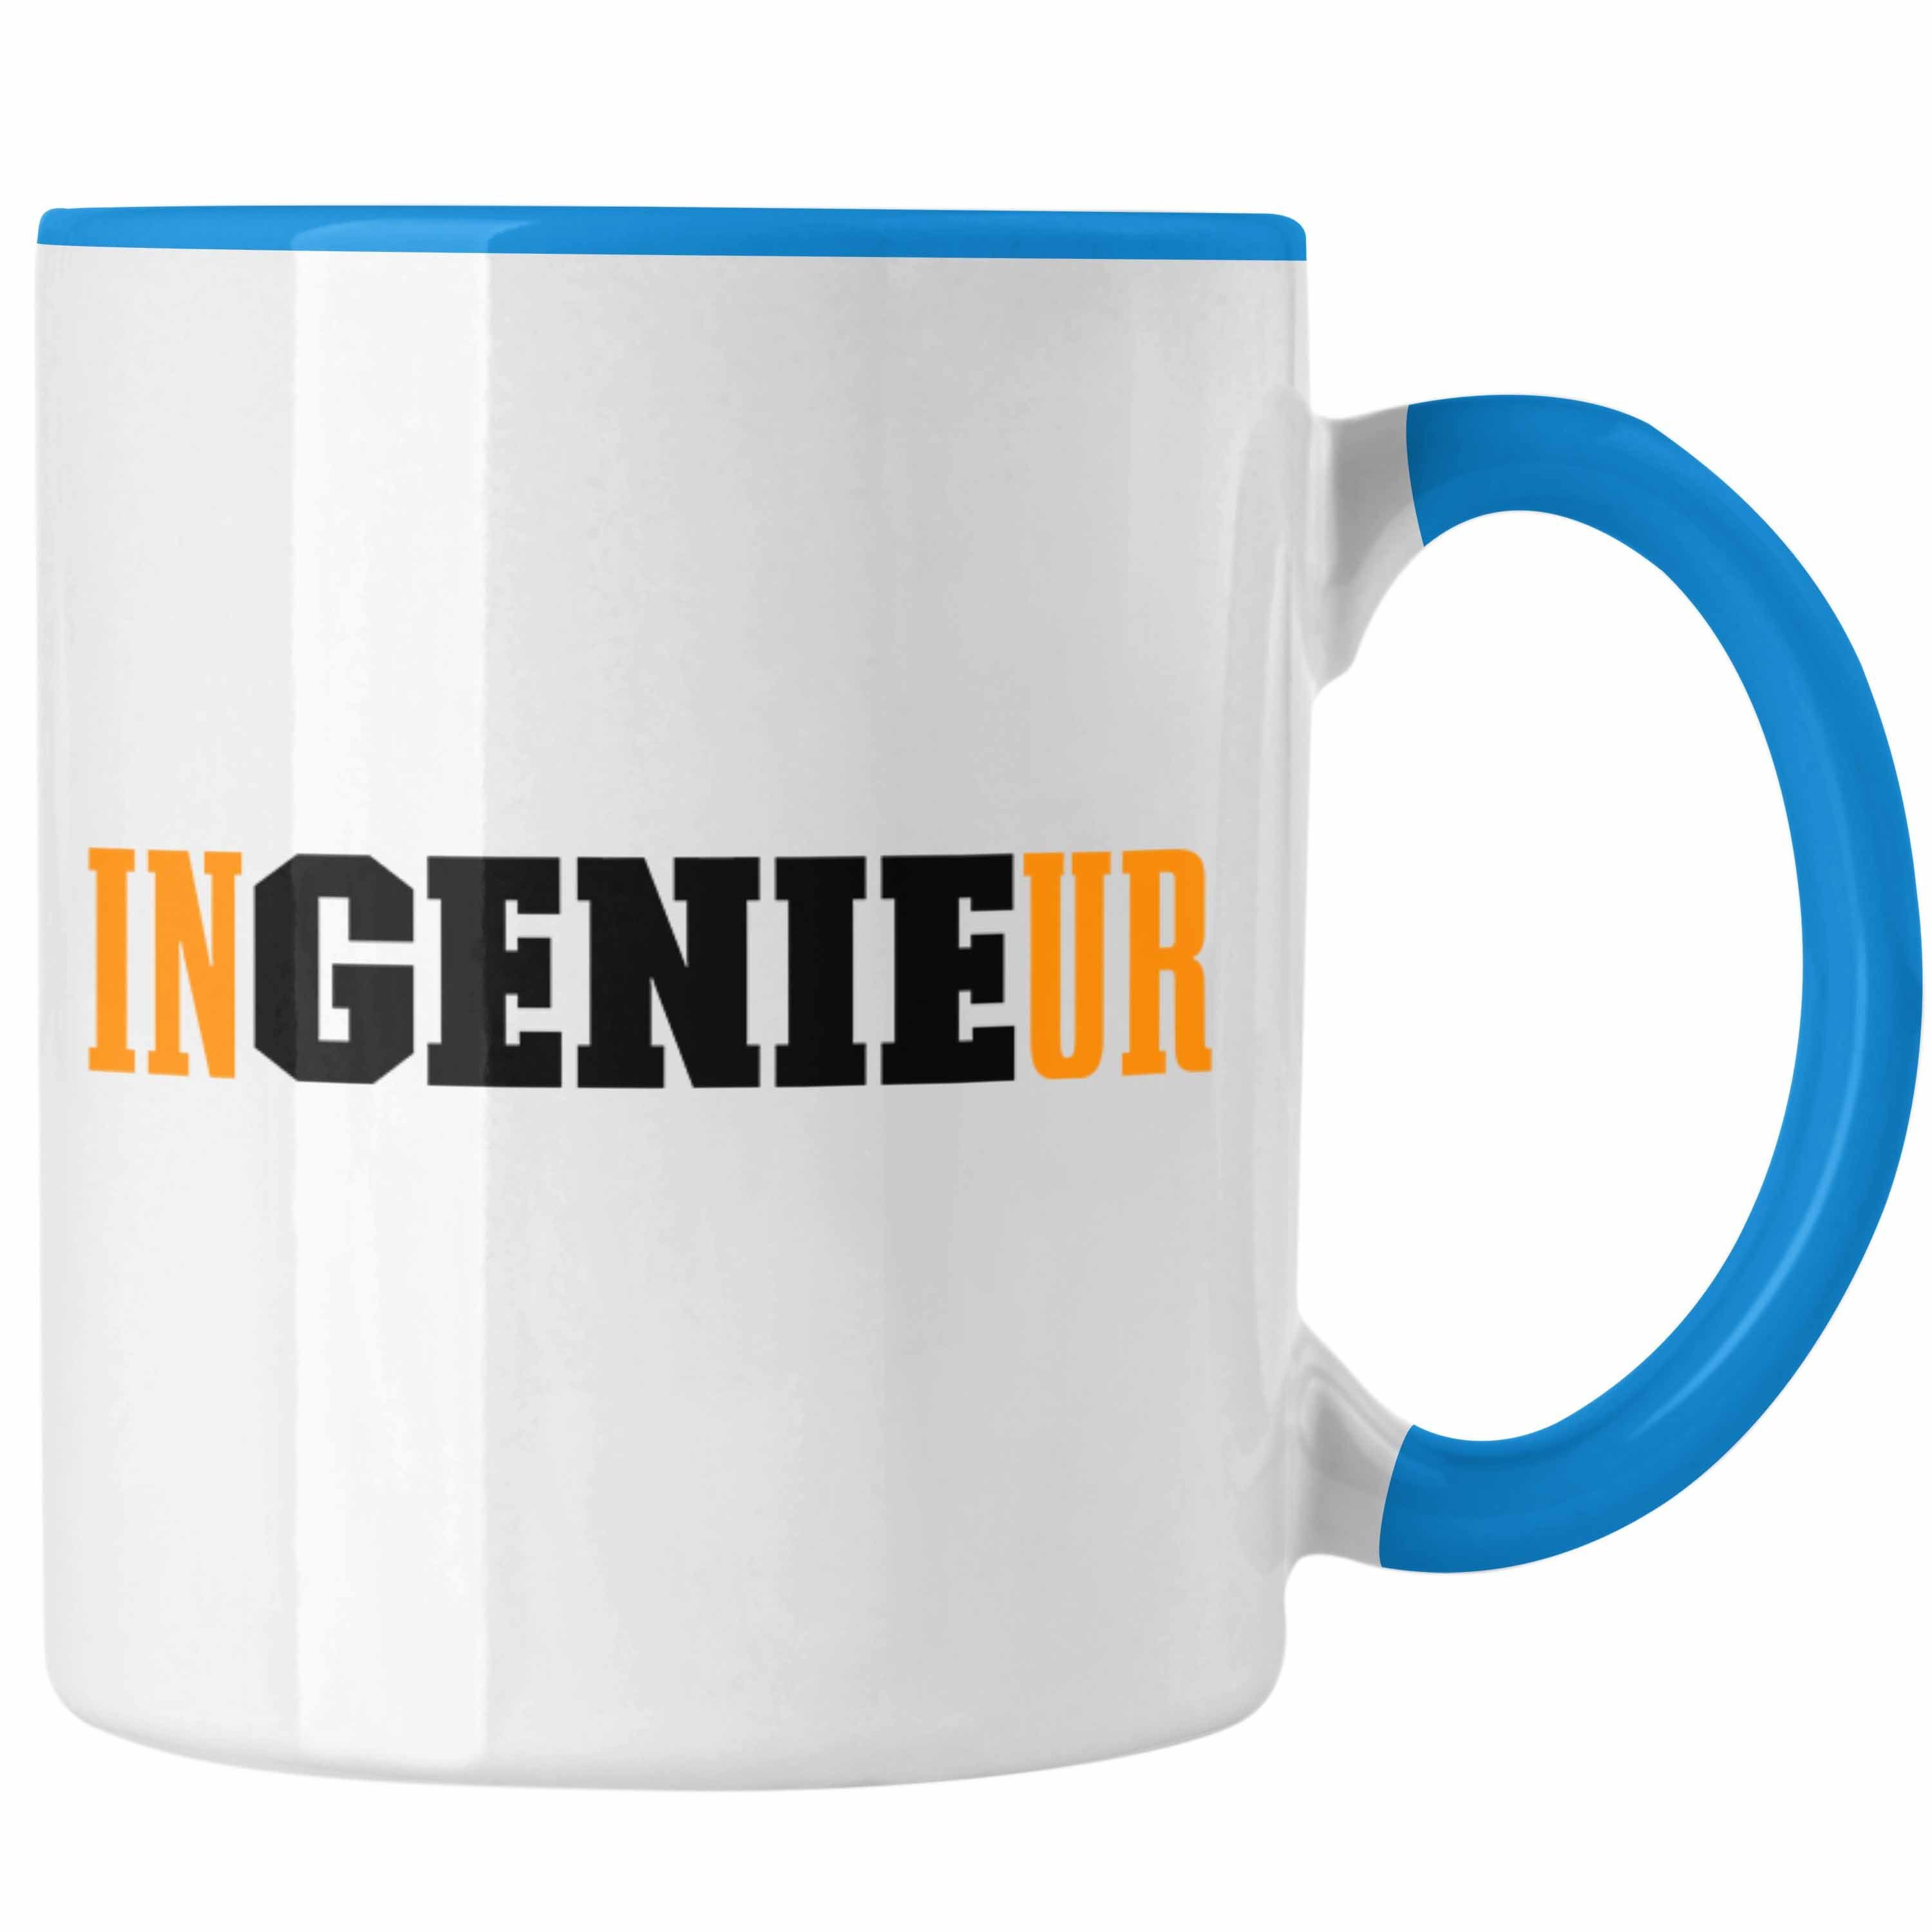 Trendation Tasse Trendation - Ingenieur Tasse Gadget Geschenk Ingeneur Kaffeetasse Geschenkidee Blau